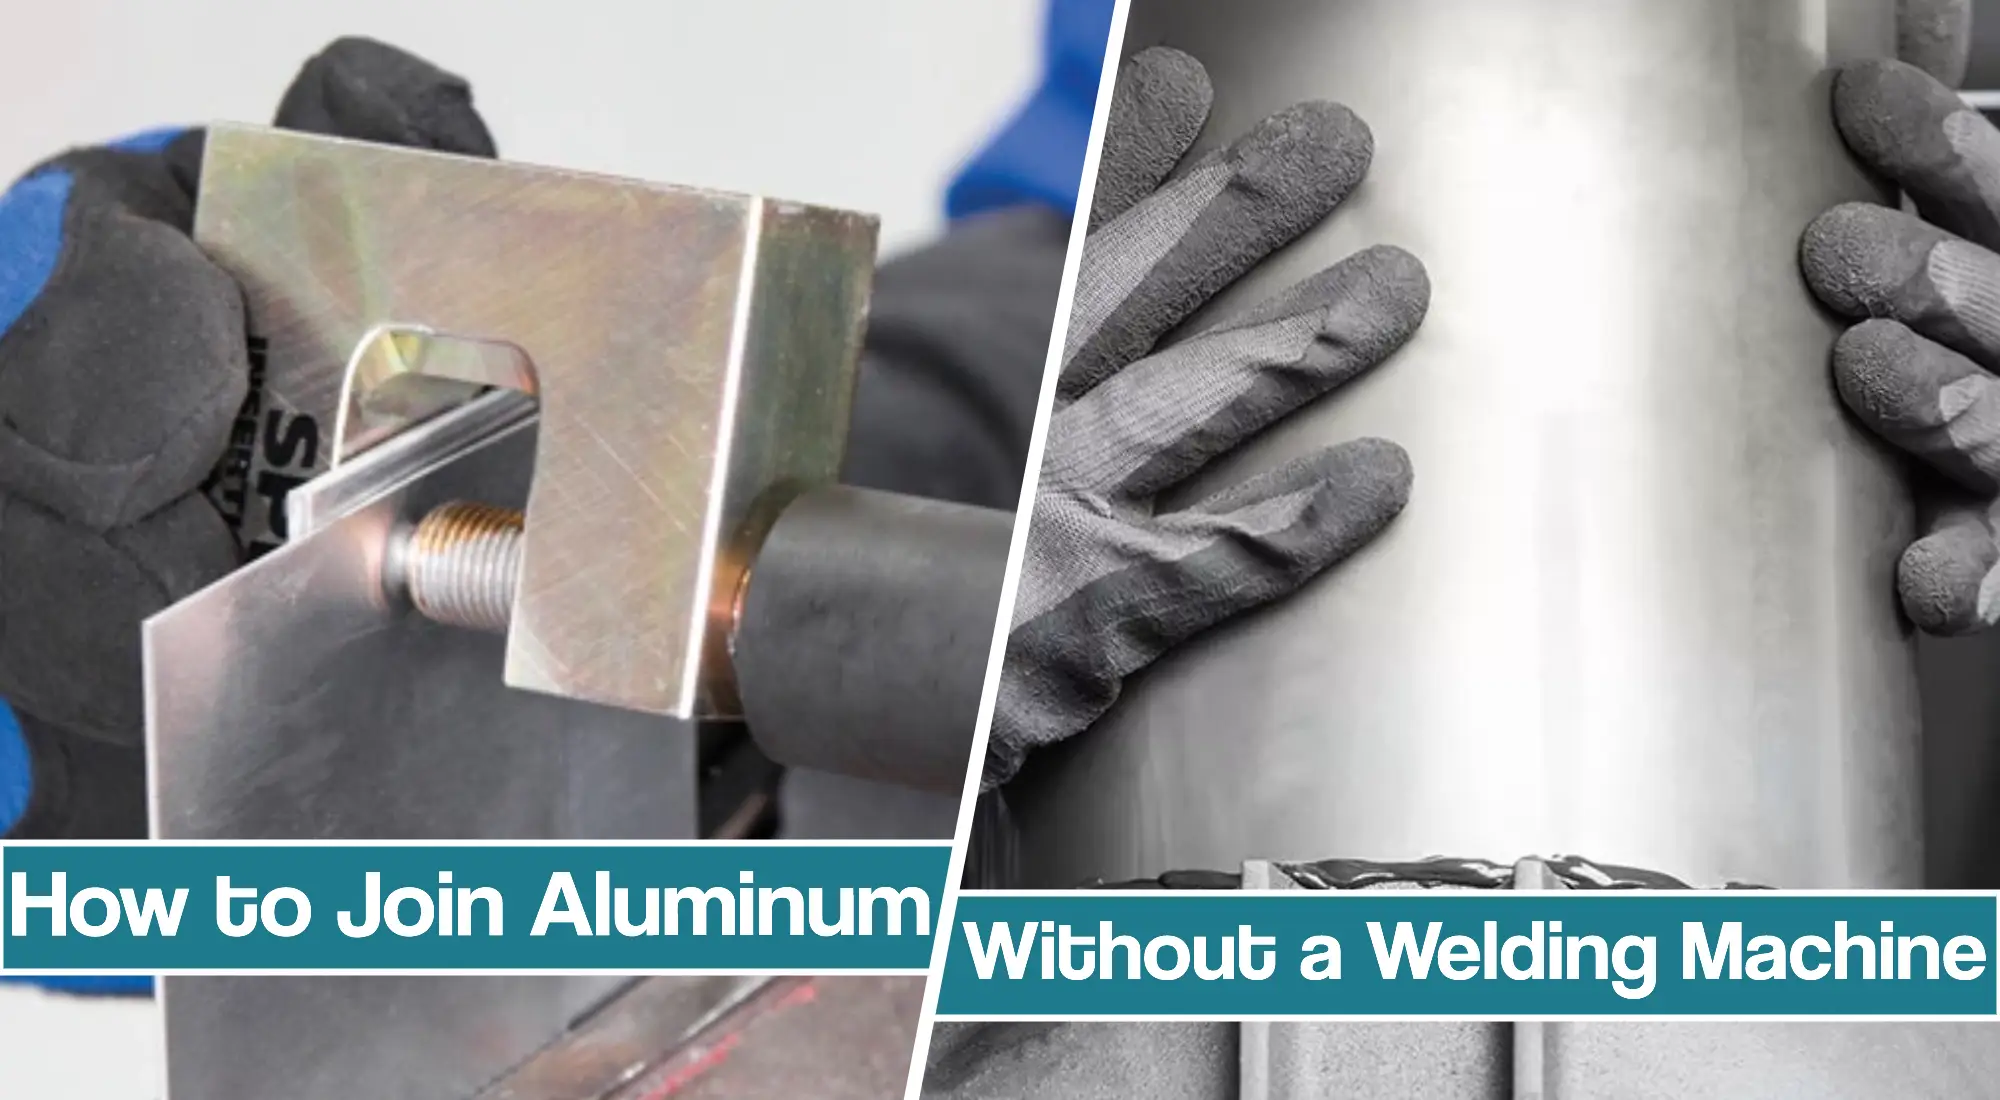 How To Weld Aluminum With no welder